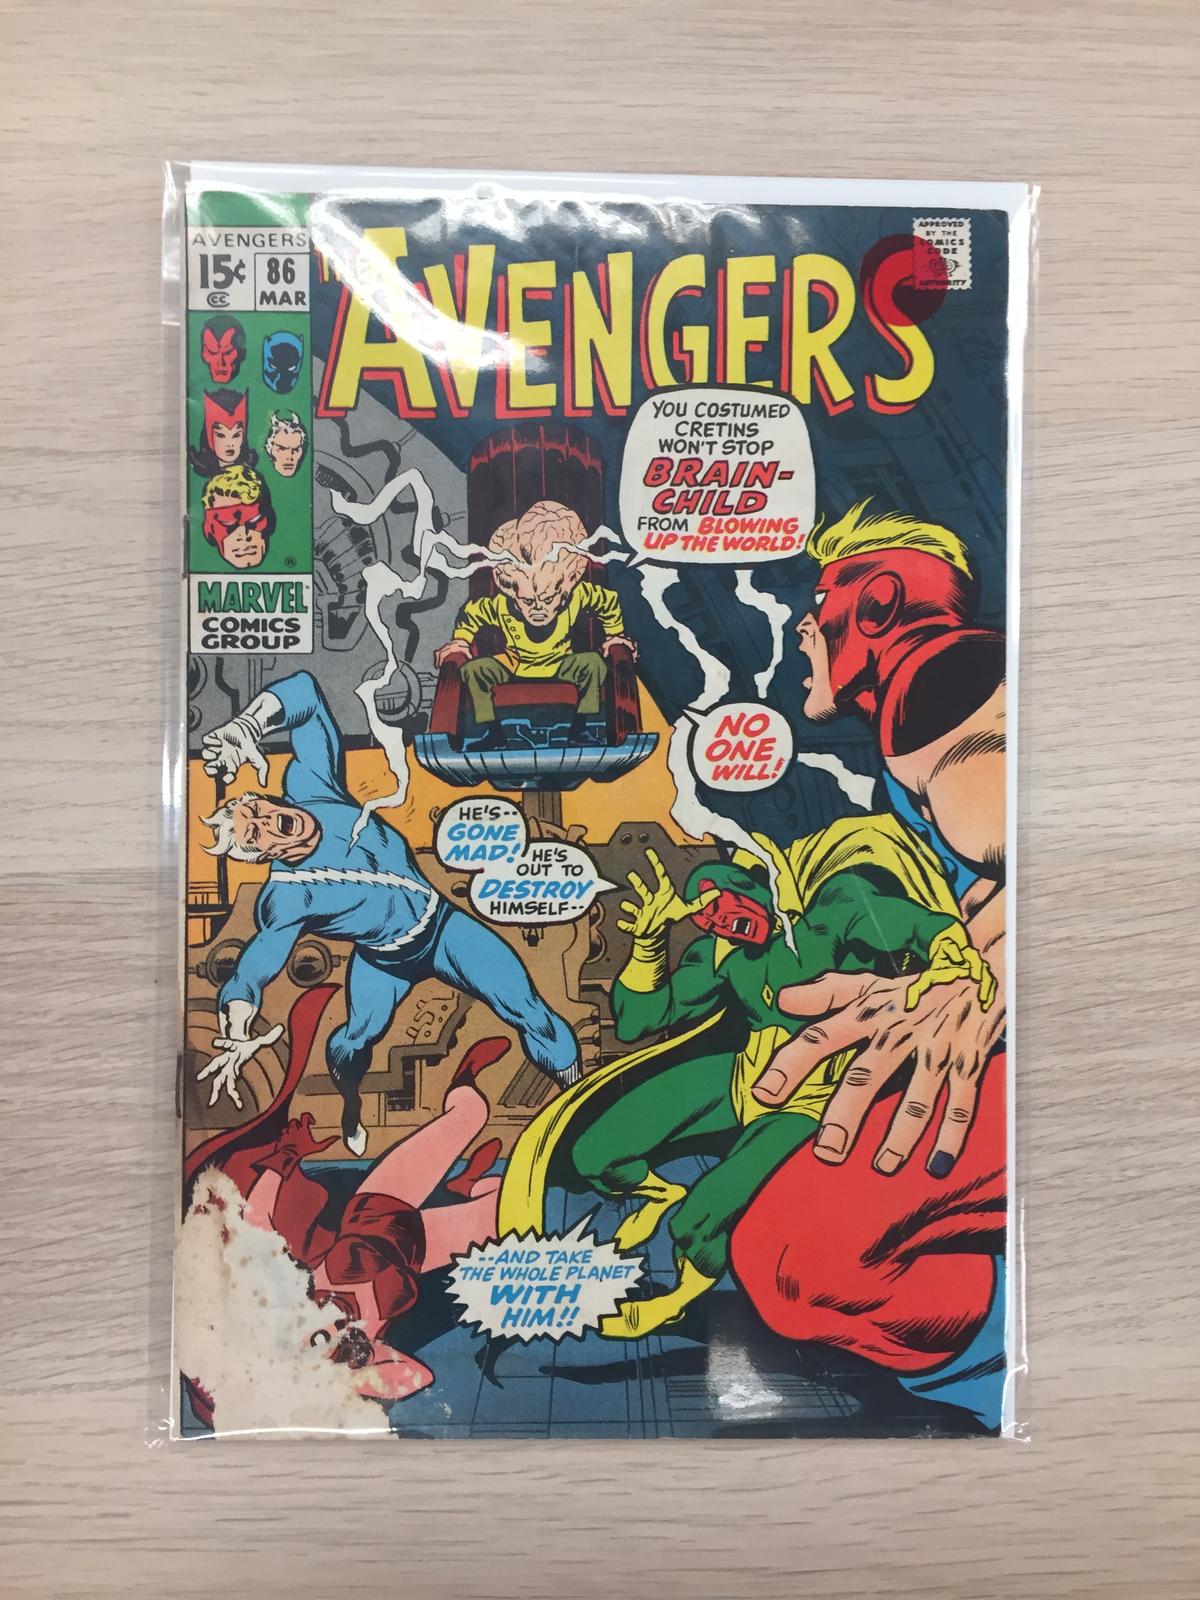 The Avengers #86 - Marvel Comic Book